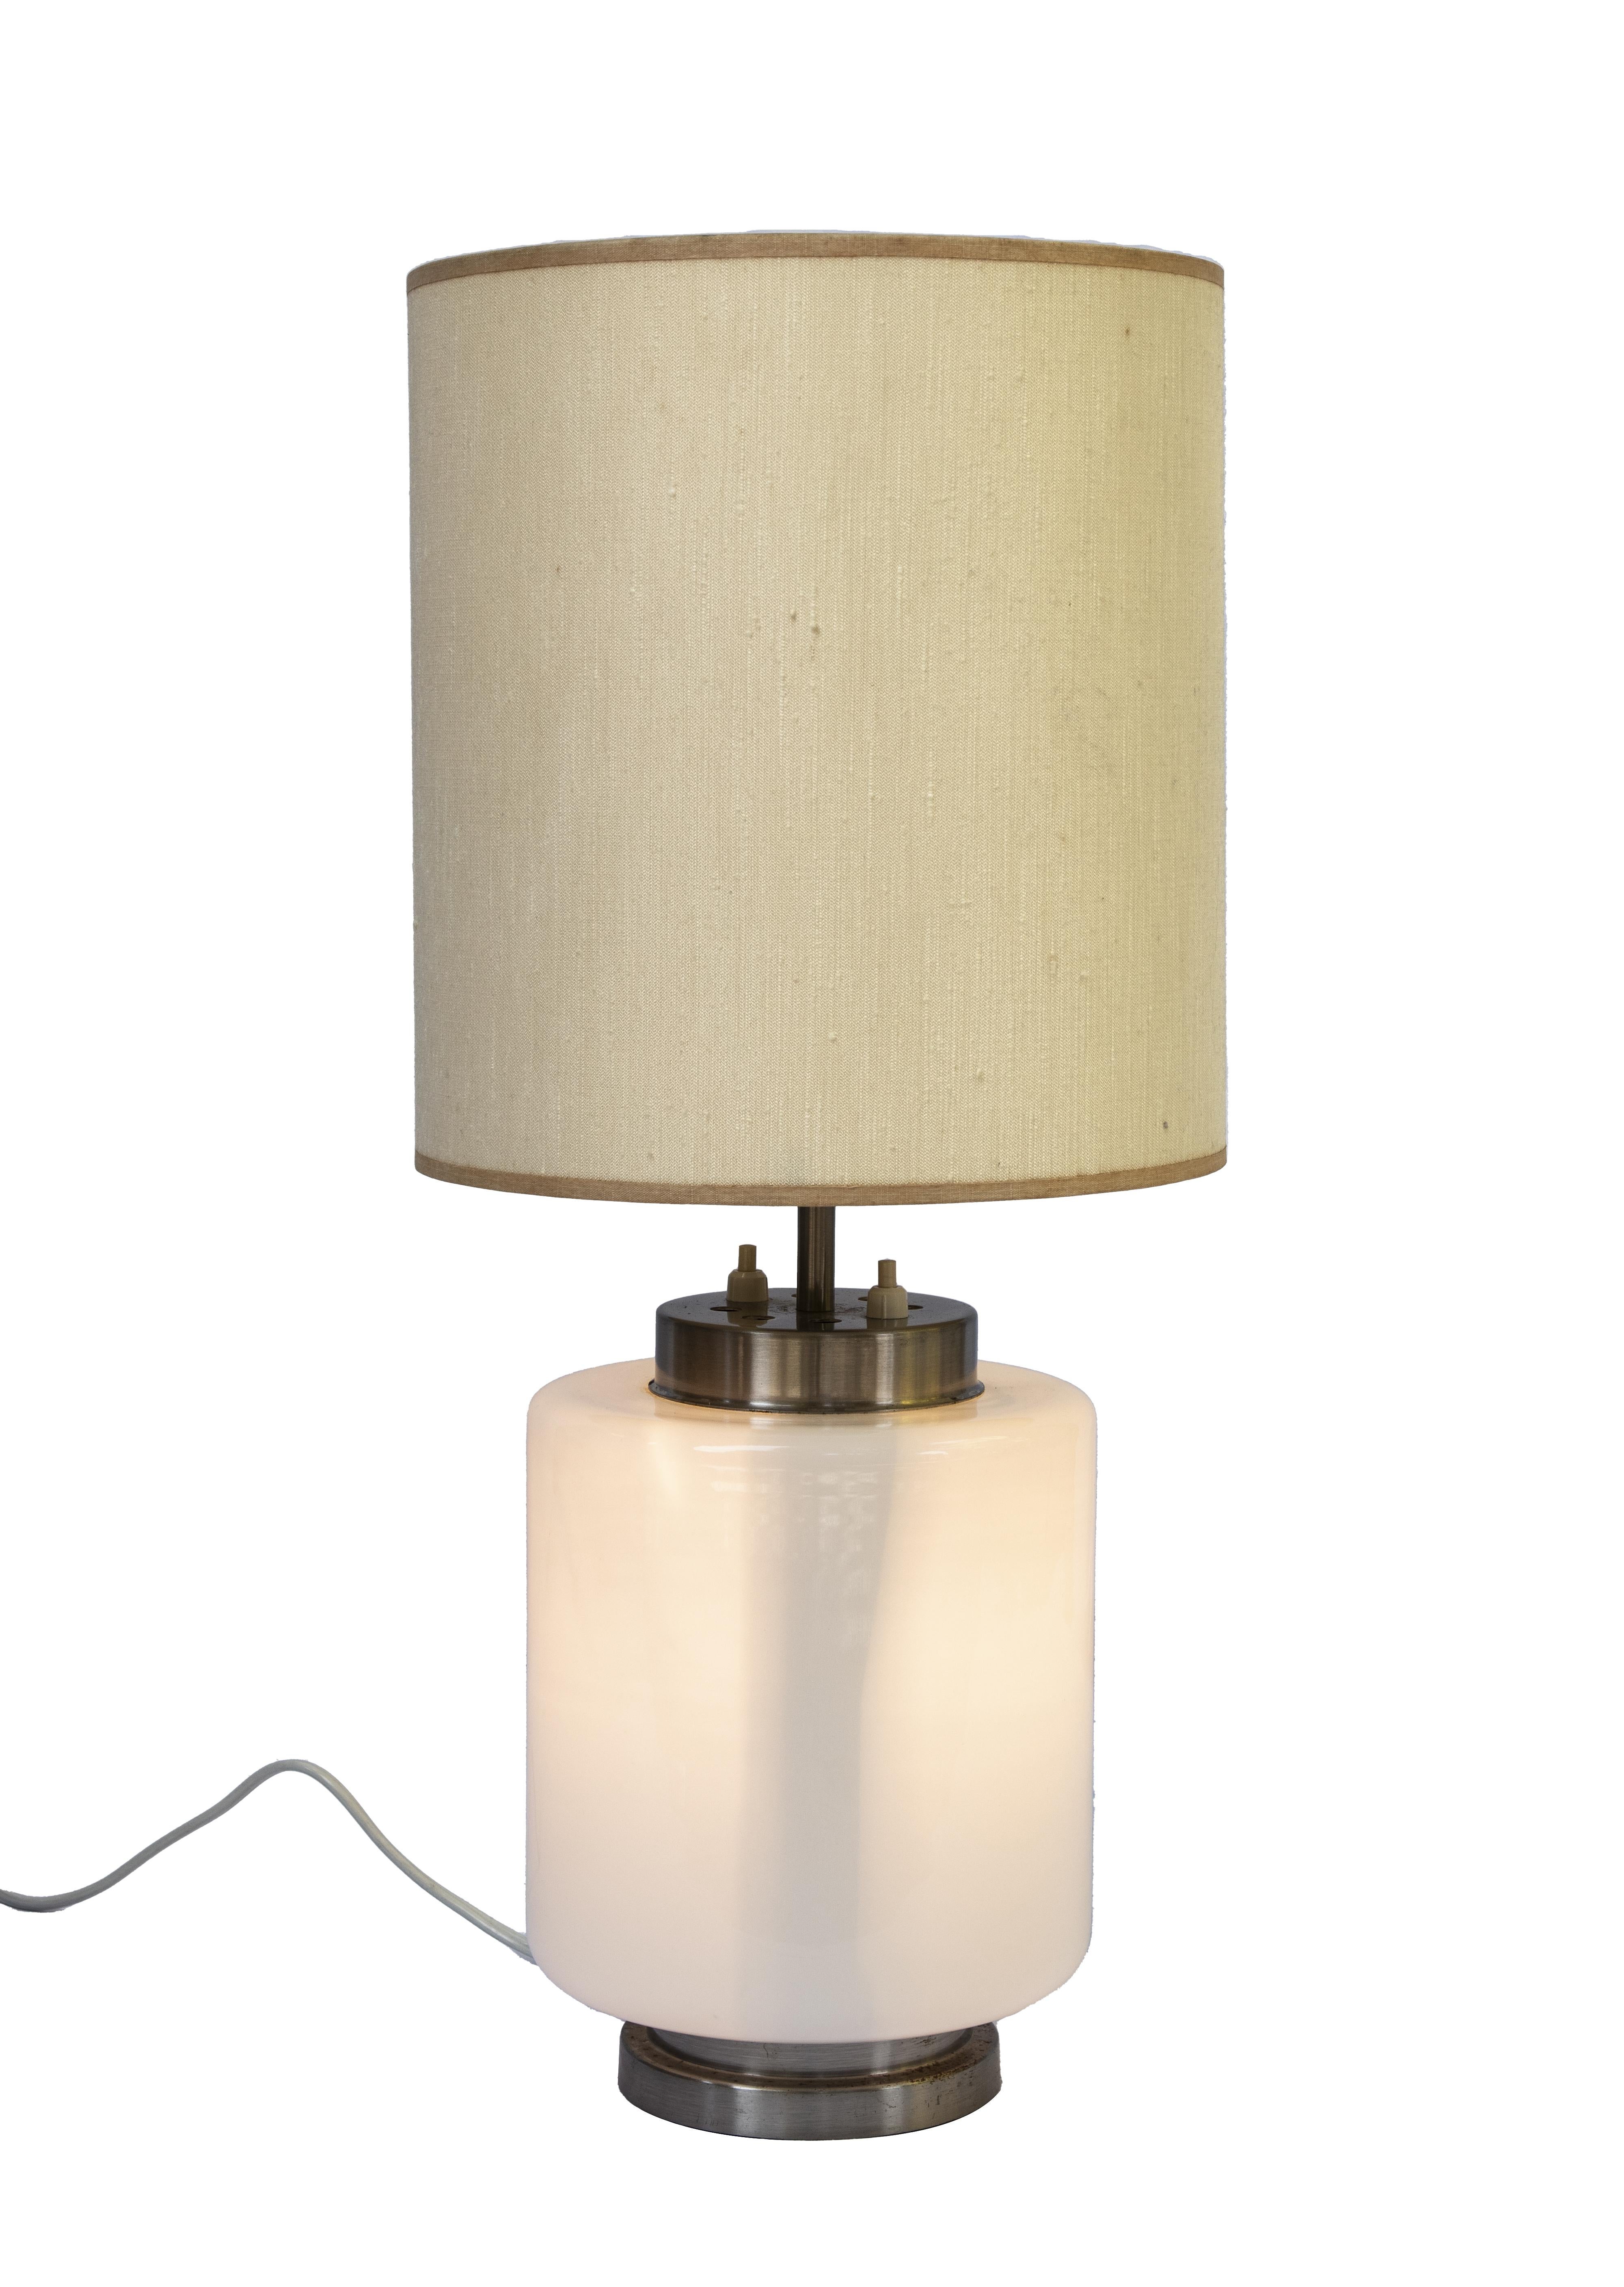 Lampe de bureau vintage de Stilnovo, Italie, années 1960.

h58×25×25 cm. 

Structure en laiton, base en verre opale contenant un diffuseur de lumière et de tissu.

Très bonnes conditions.